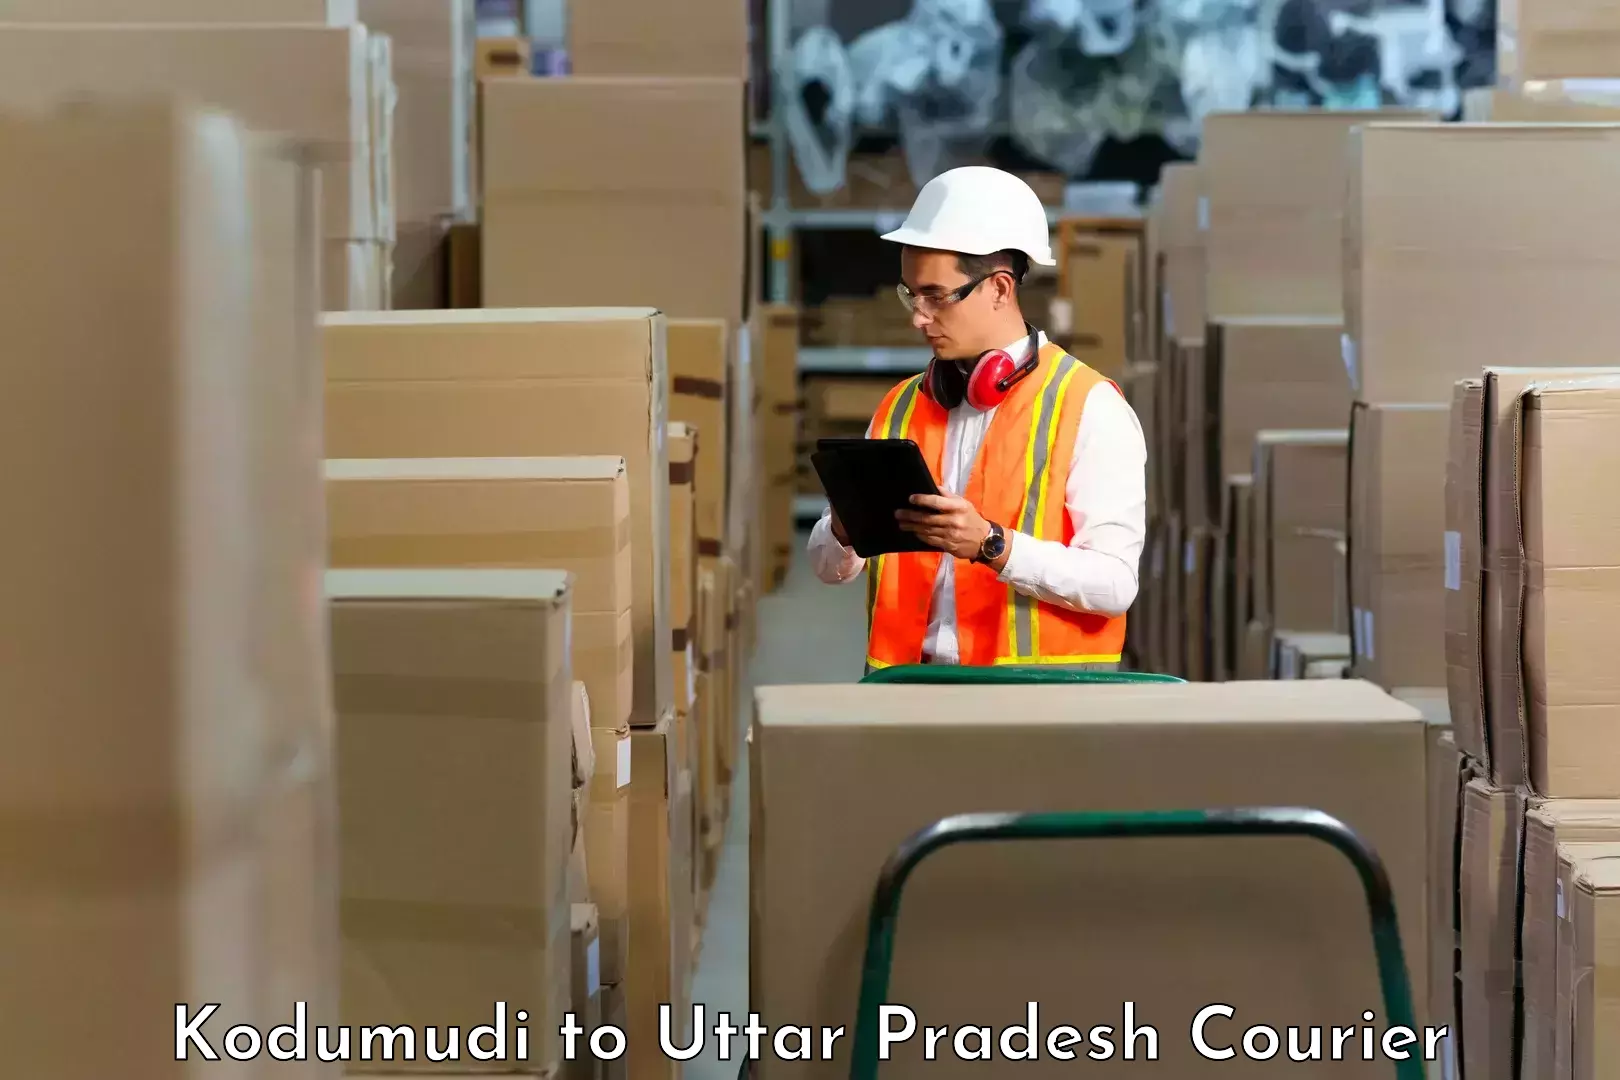 Customer-centric shipping Kodumudi to Mishrikh